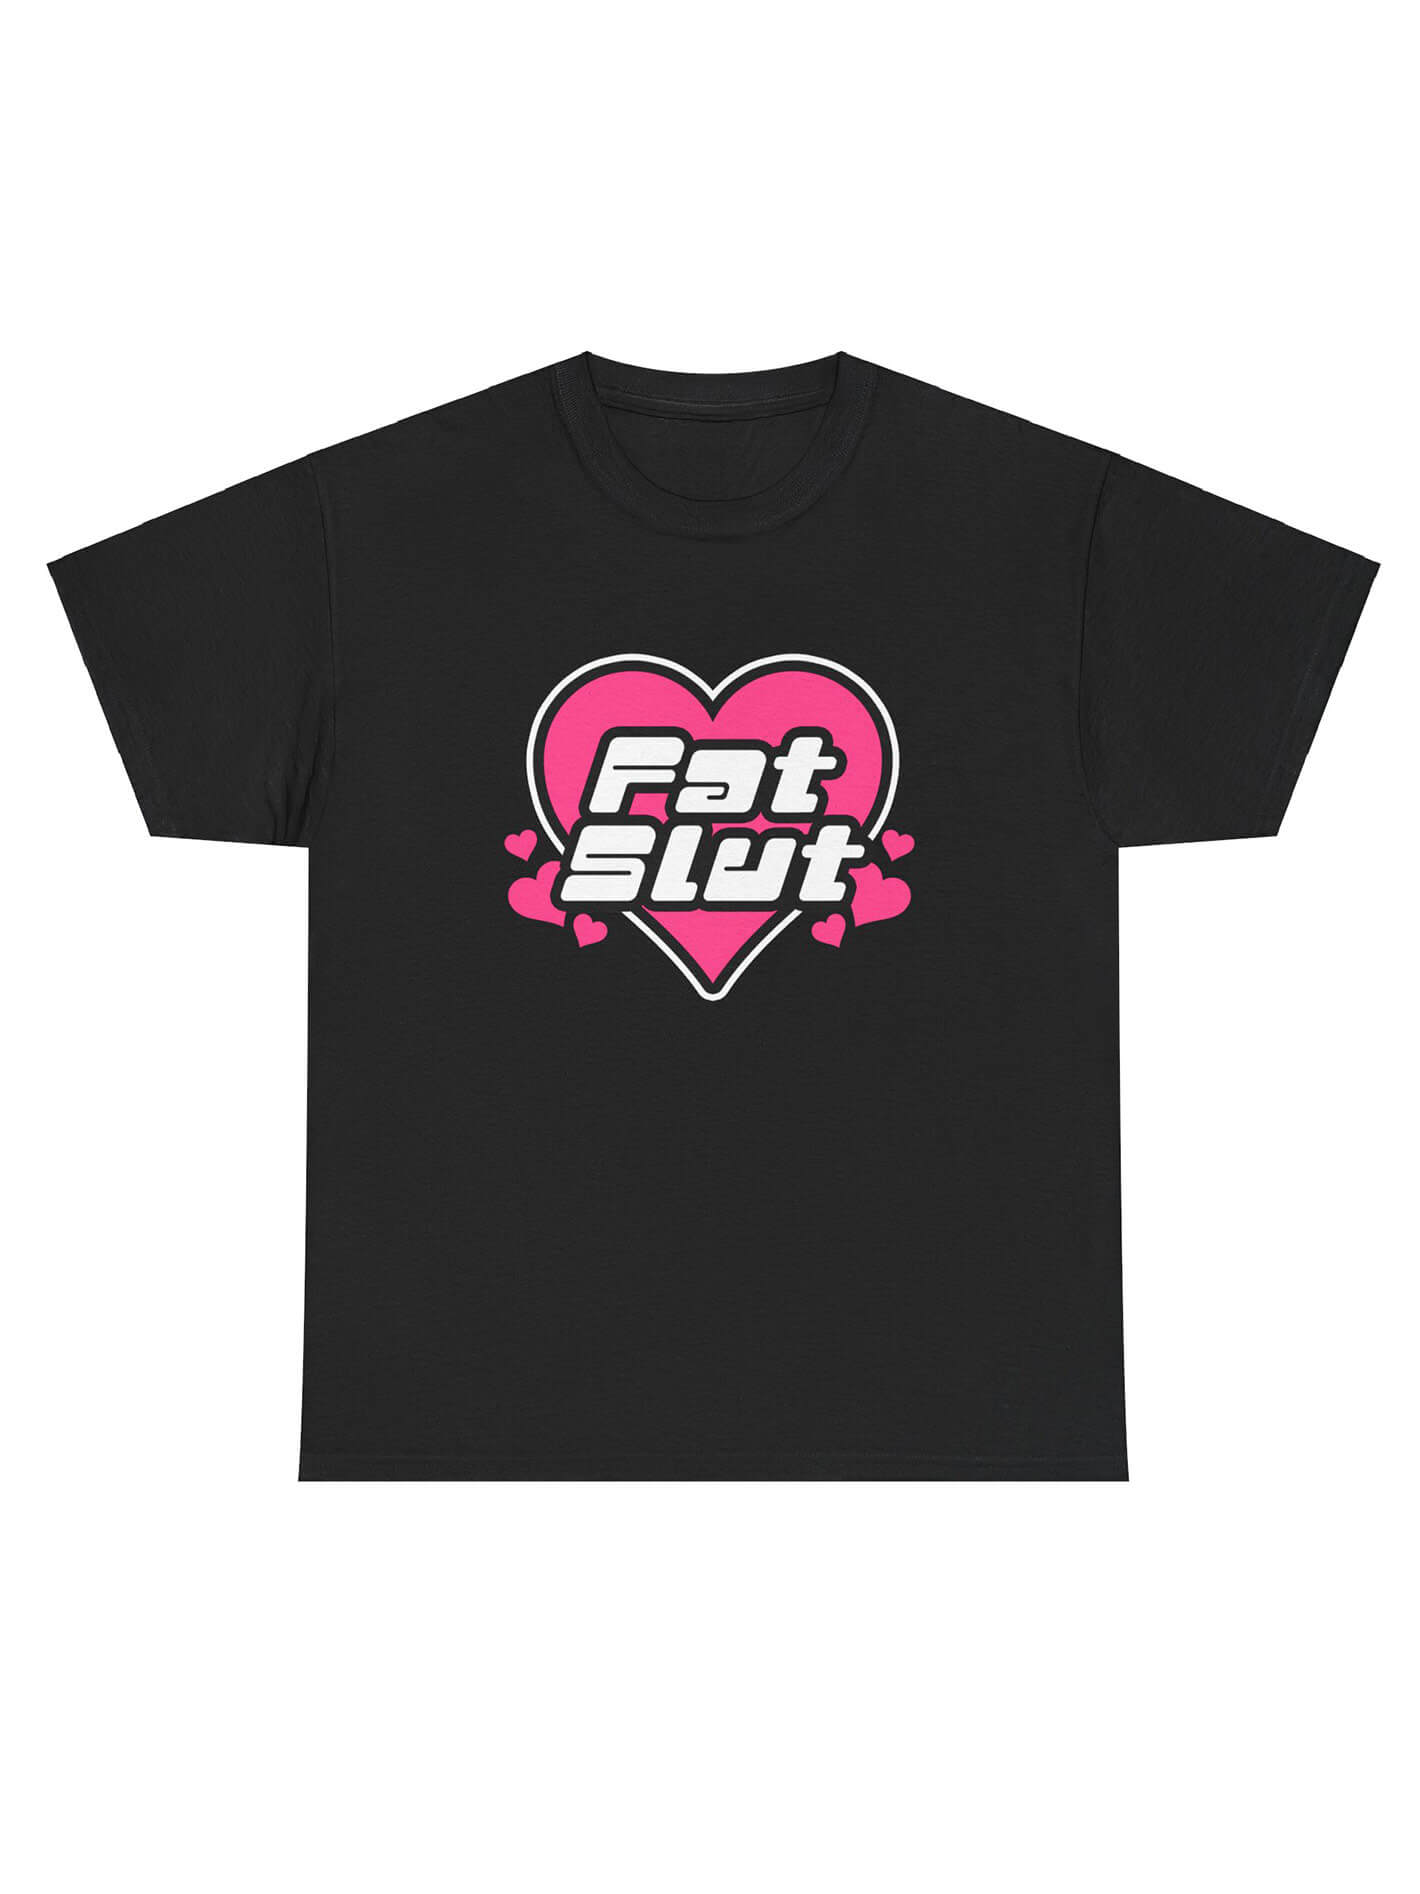 Fat slut black graphic t-shirt.